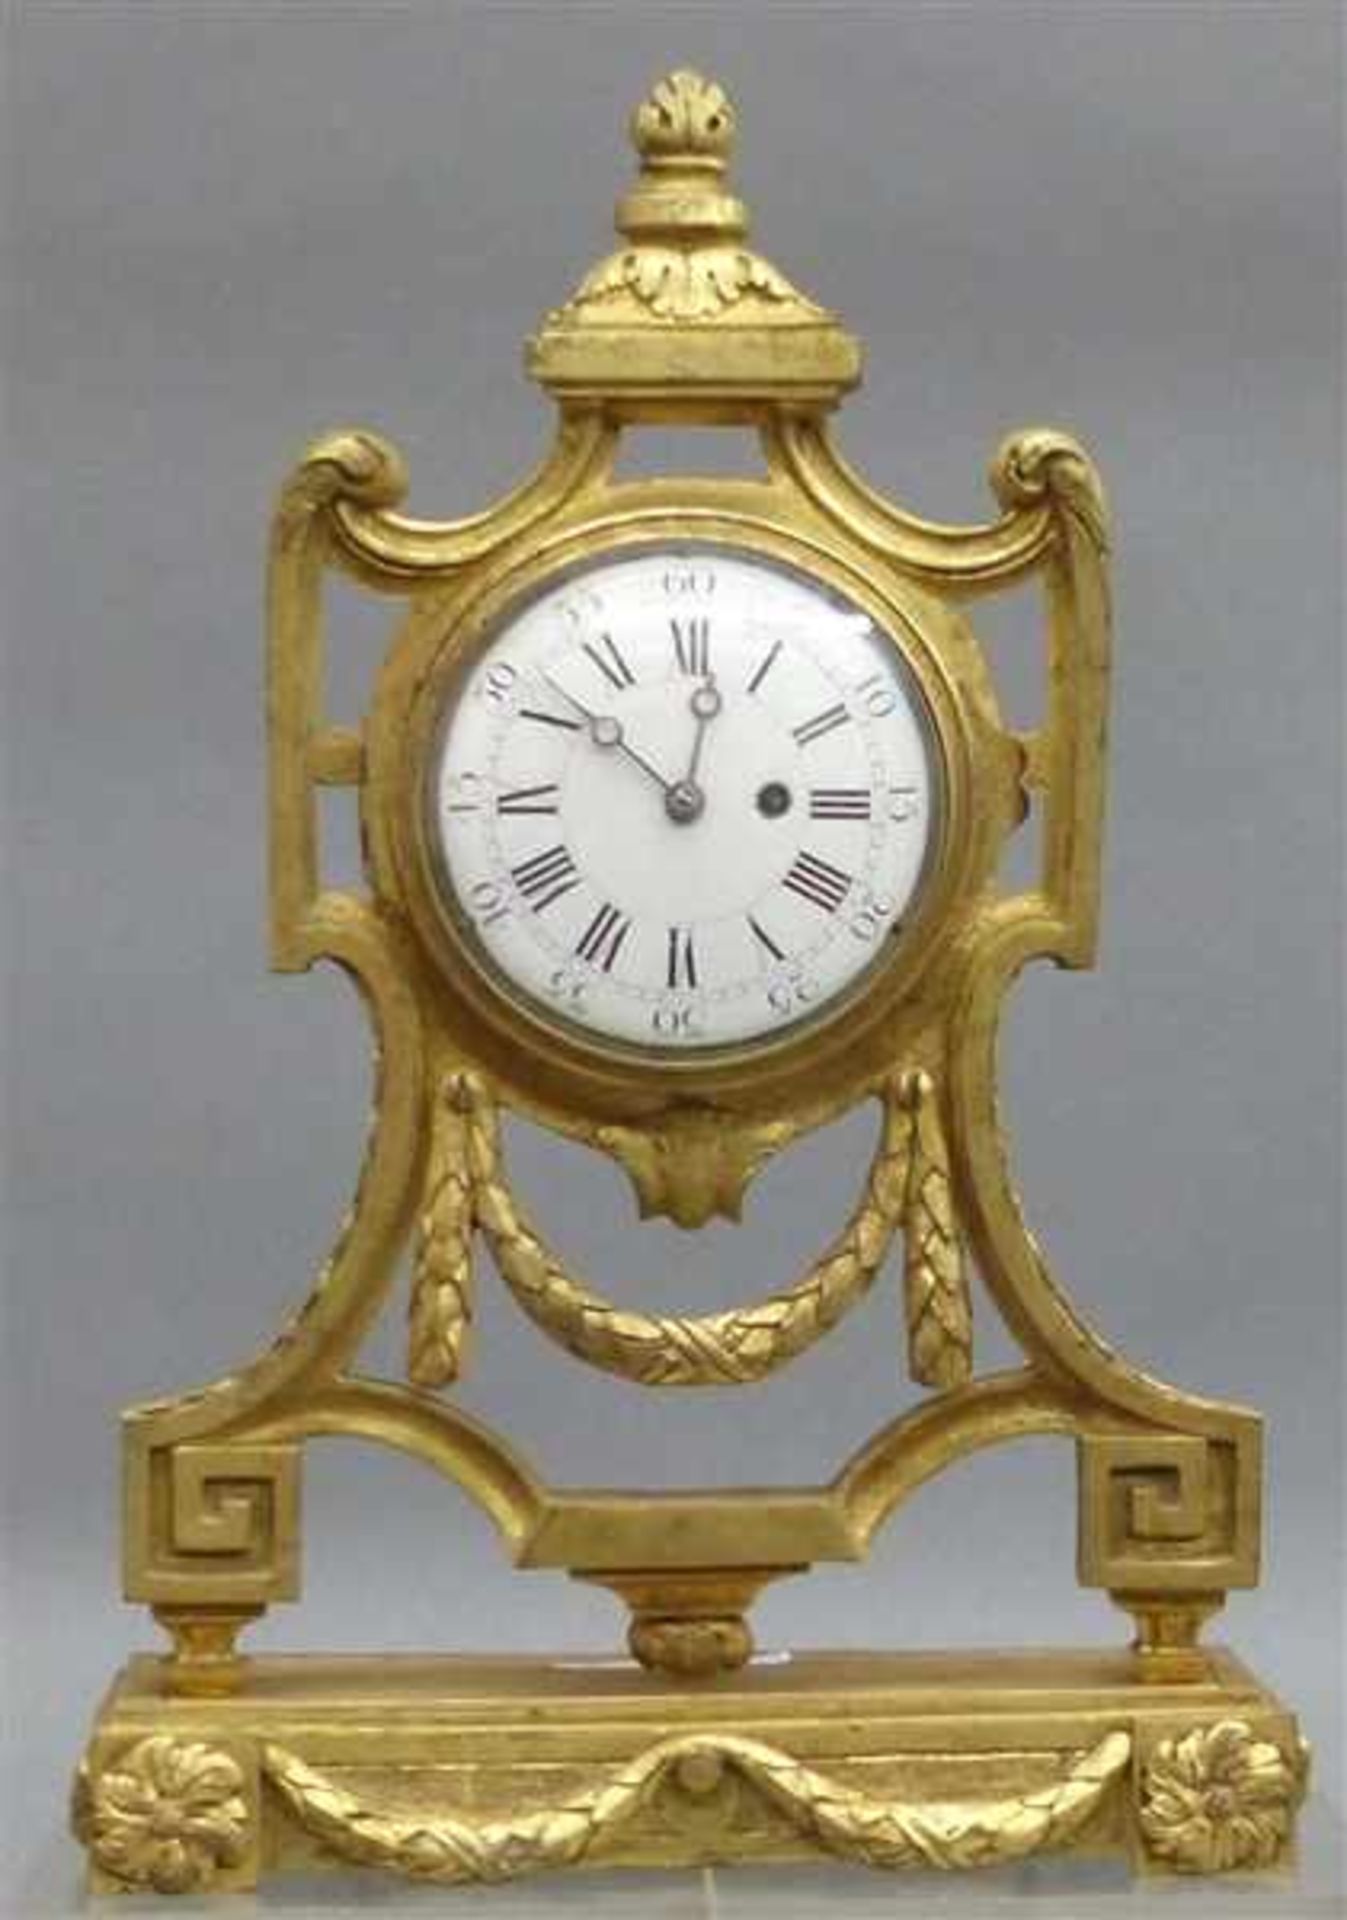 Tischuhr Frankreich, 19. Jh., Gussgehäuse, vergoldet, Louisseize Form, Spindeluhrwerk, signiert J.B.